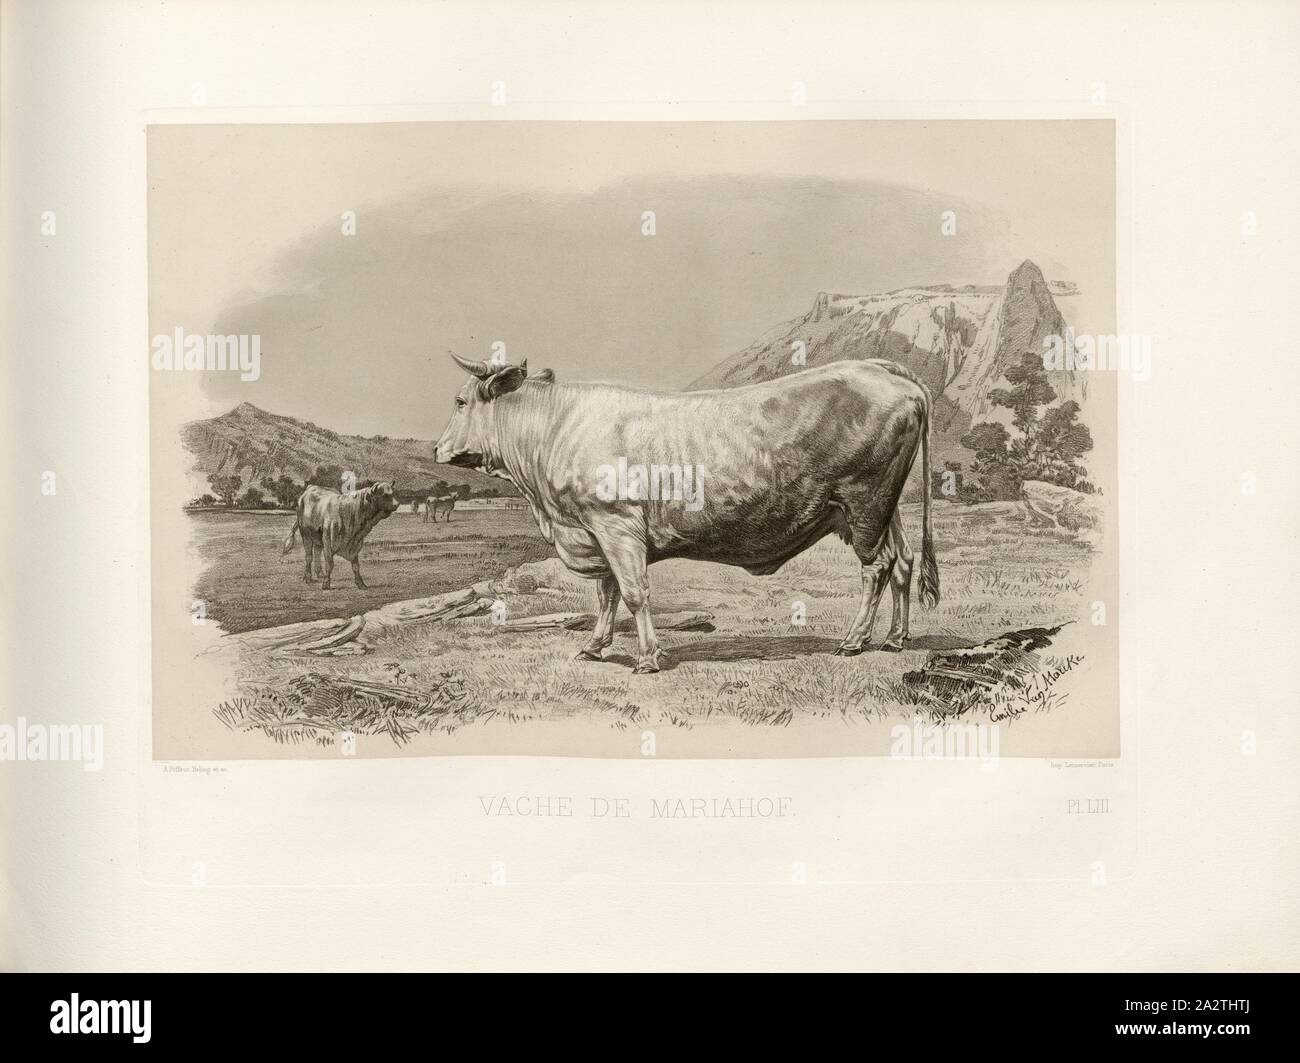 Mariahof cow, Austrian cattle breed, cow, signed: Phot., Nadar, Emile Van Marcke; A. Riffaut Heliog., et sc, Pl. LIII, p. 123, Tournachon, Adrien Alban (Phot.); Marcke, Emile van; Riffaut (heliog. et sc.), Emile Baudement: Les races bovines au concours universel agricole de Paris en 1856: études zootechniques. Bd. 2. Paris: Imprimerie Impériale, MDCCCLXI [1861 Stock Photo